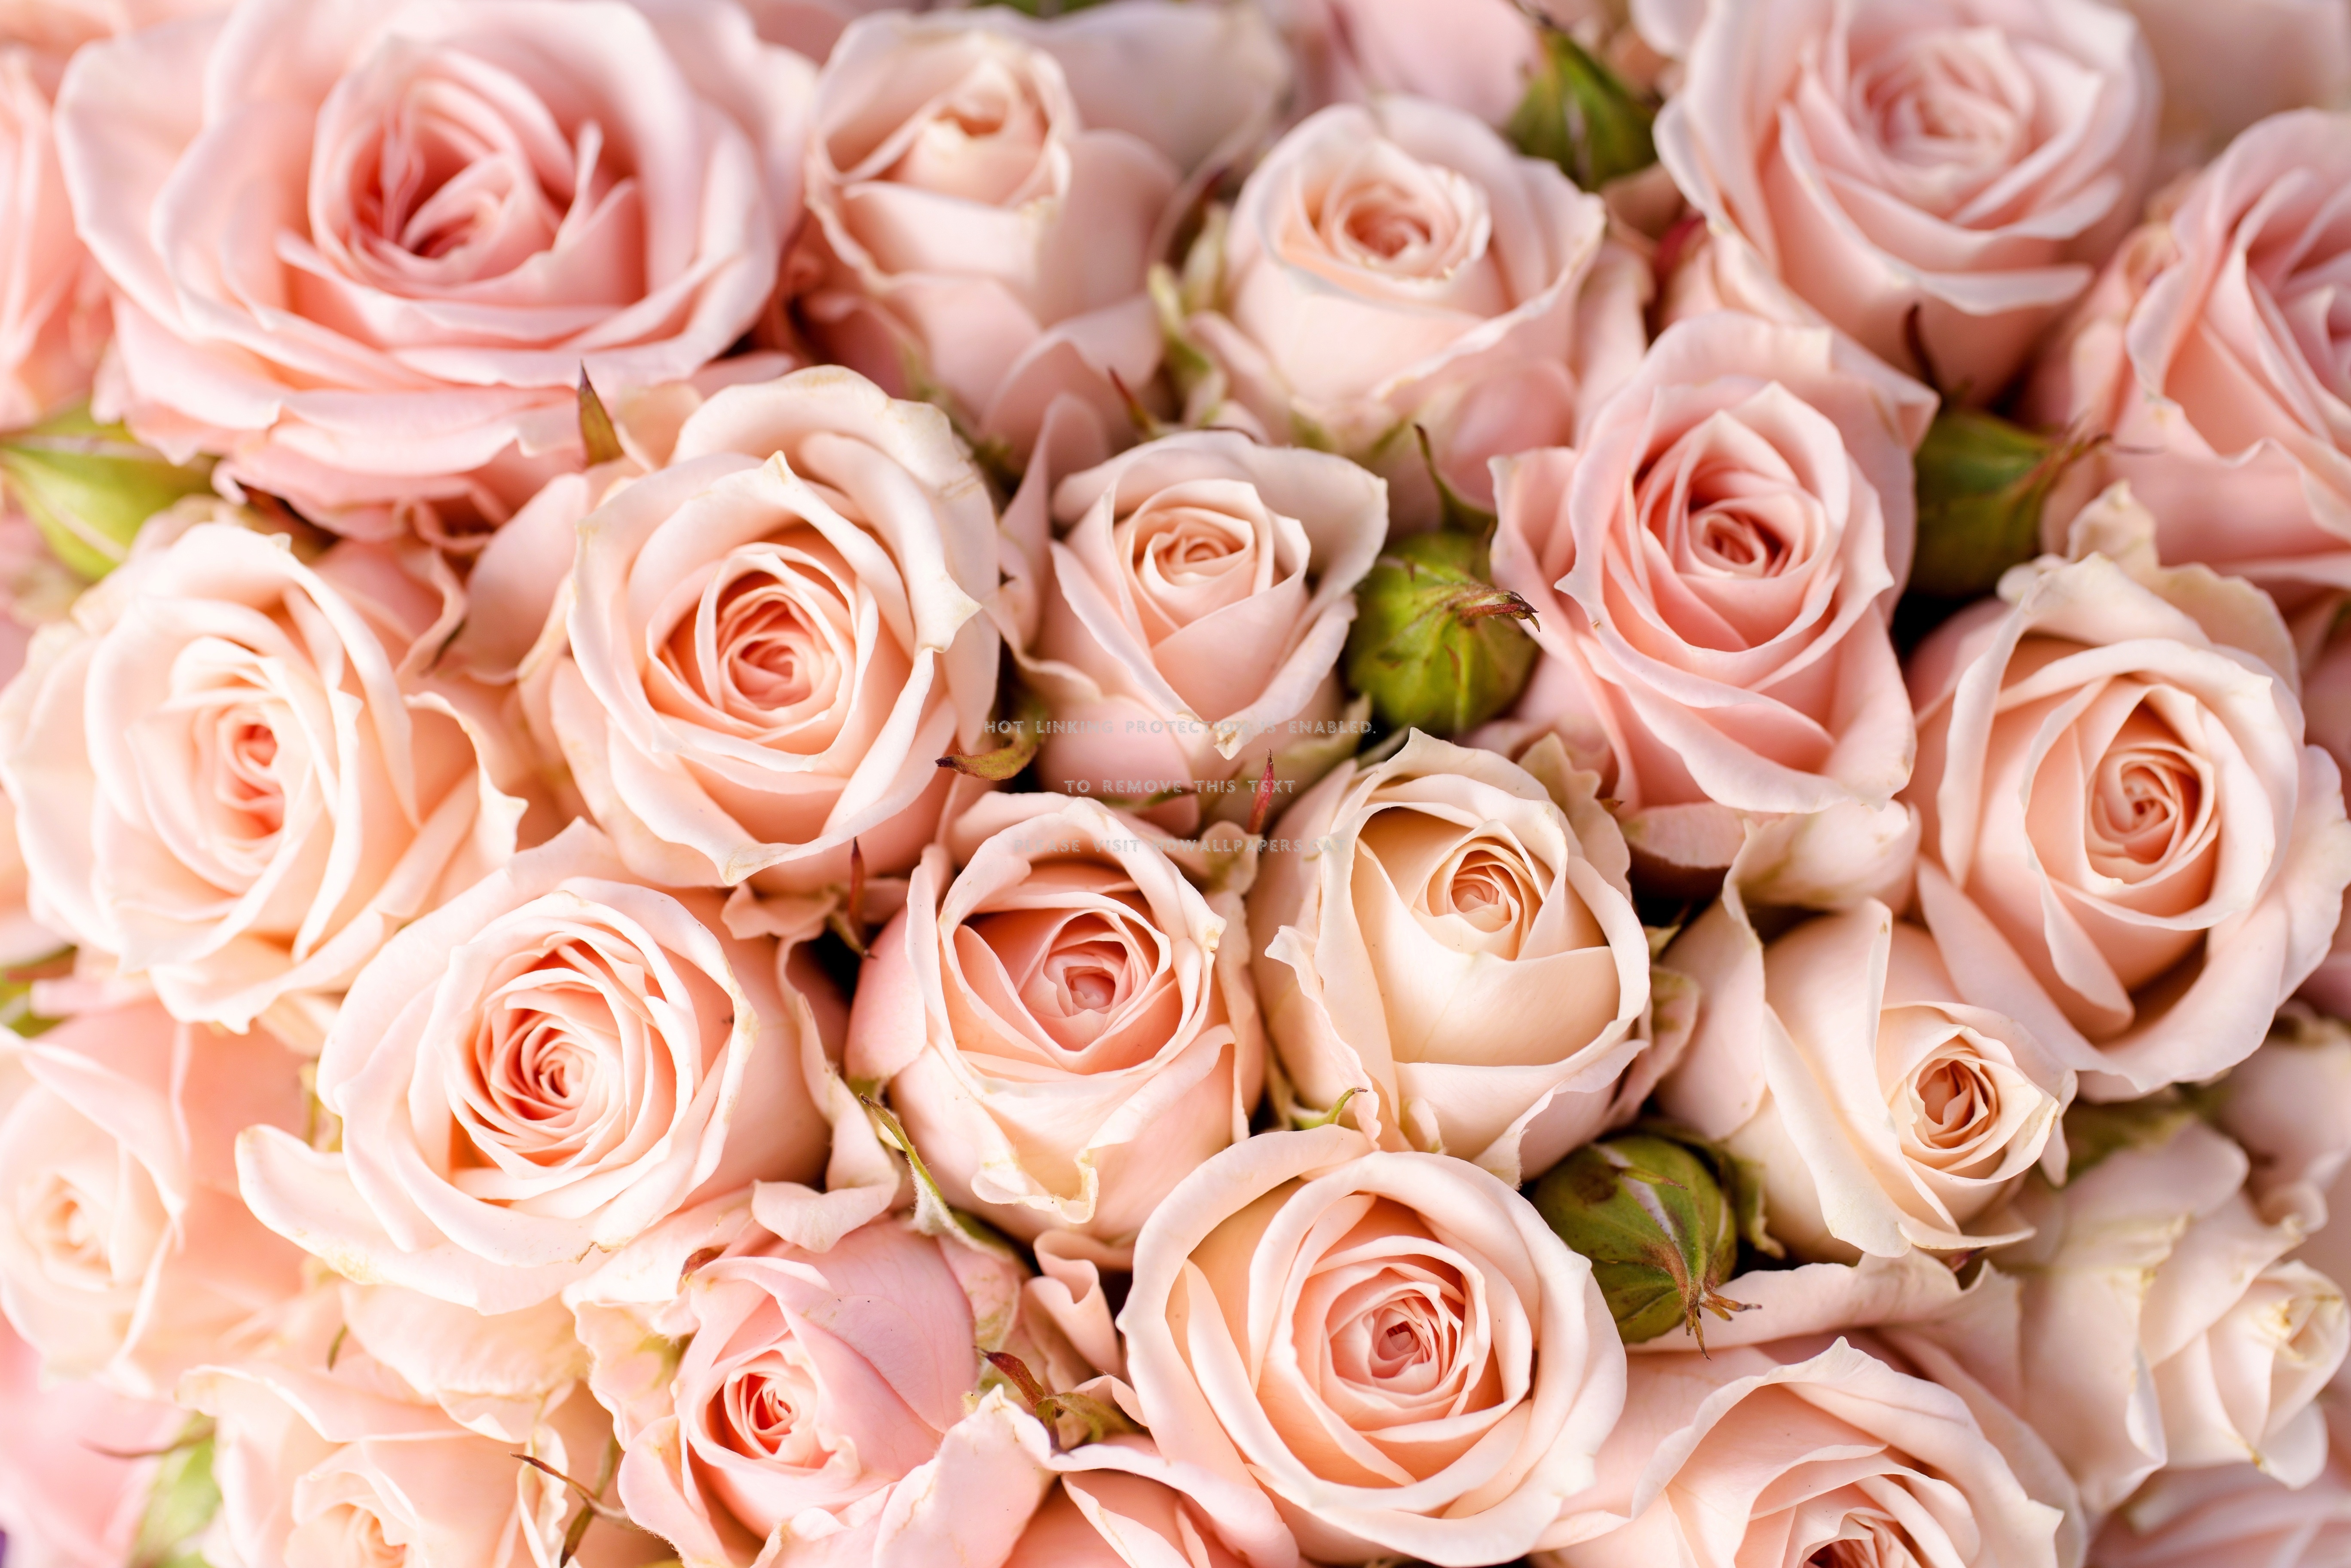 pastel roses wallpaper,flower,garden roses,flowering plant,rose,pink